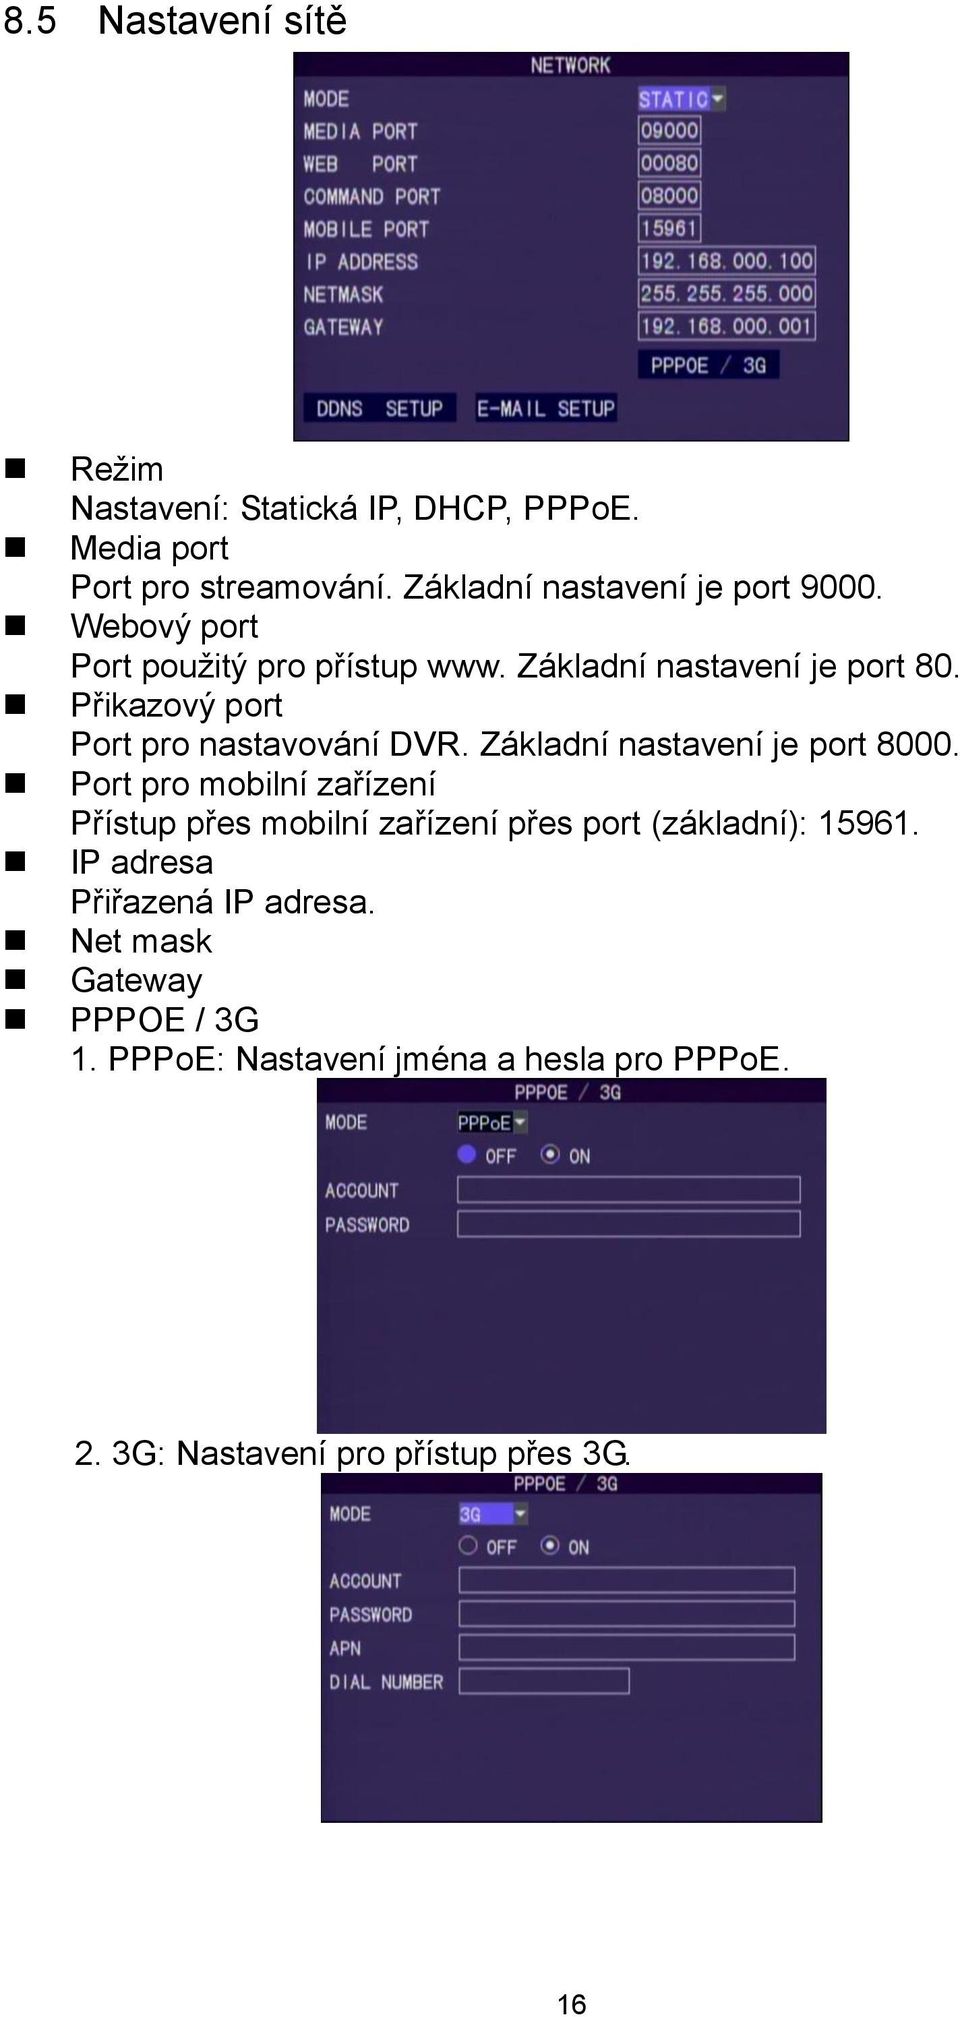 Přikazový port Port pro nastavování DVR. Základní nastavení je port 8000.